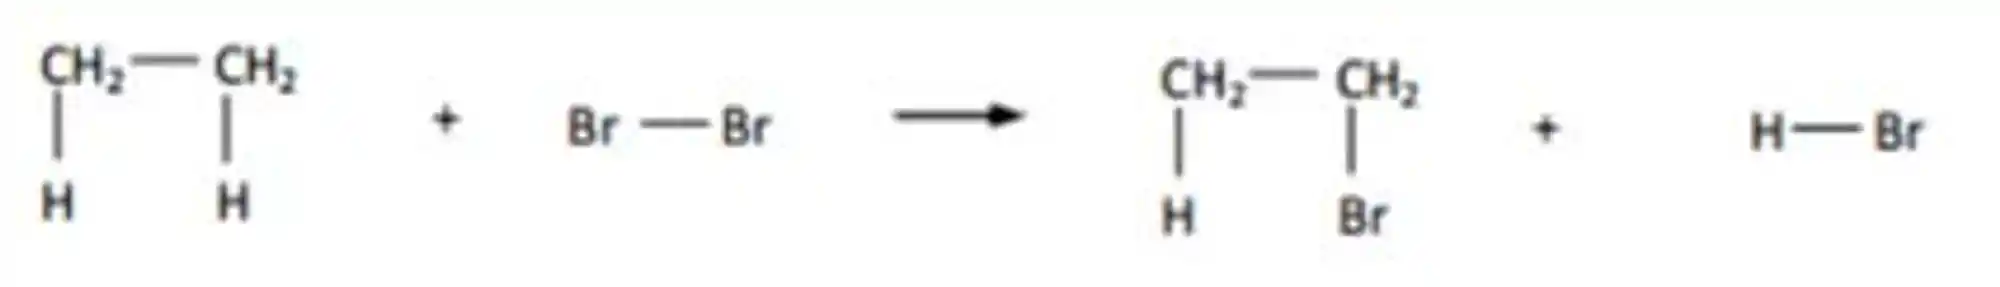 Reações de substituição com halogênio: Exemplo